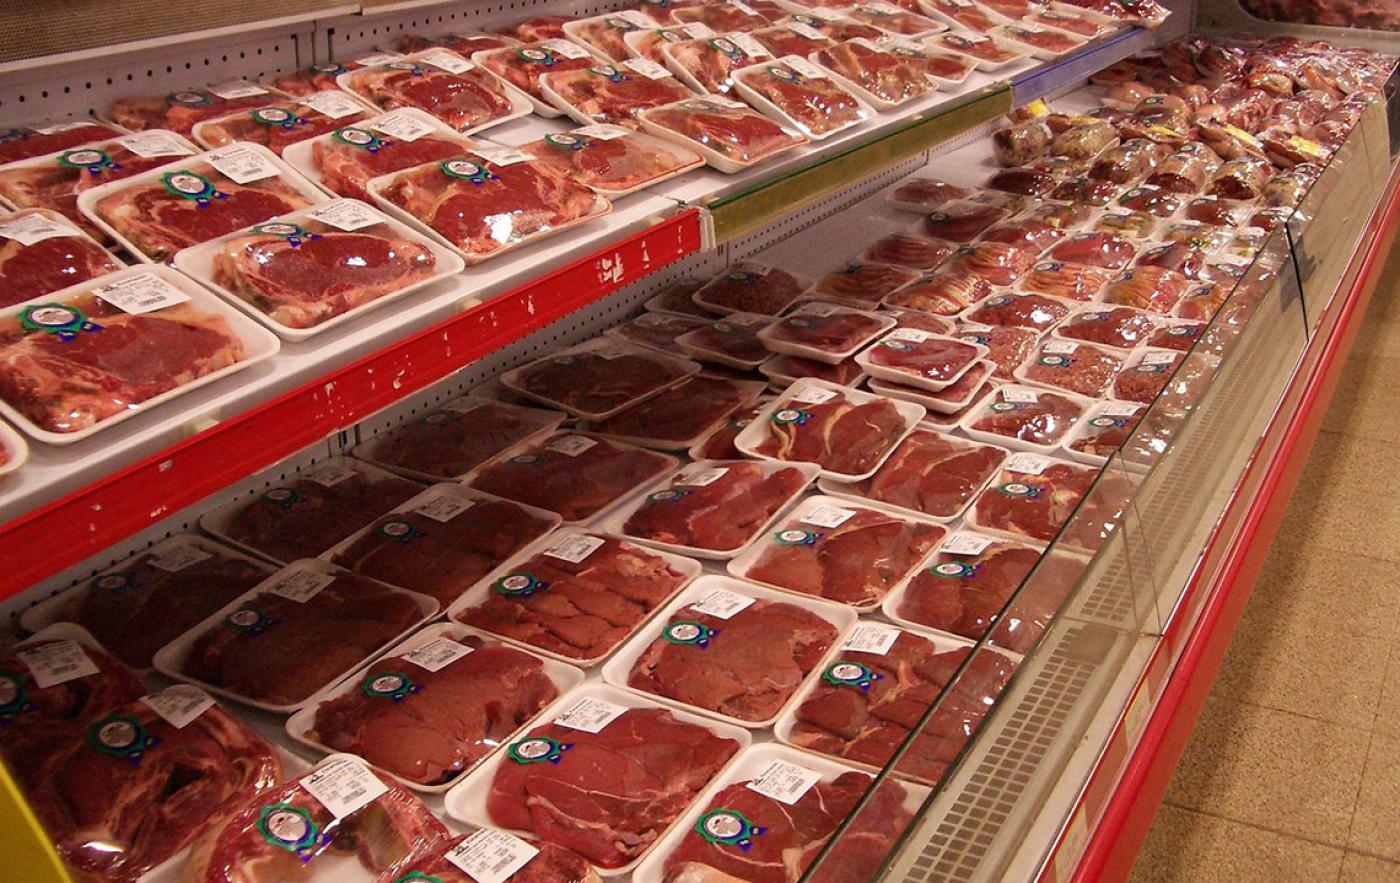 Lebensmitteleinzelhändler stellen Frischfleisch-Sortiment auf deutsche Herkunft um